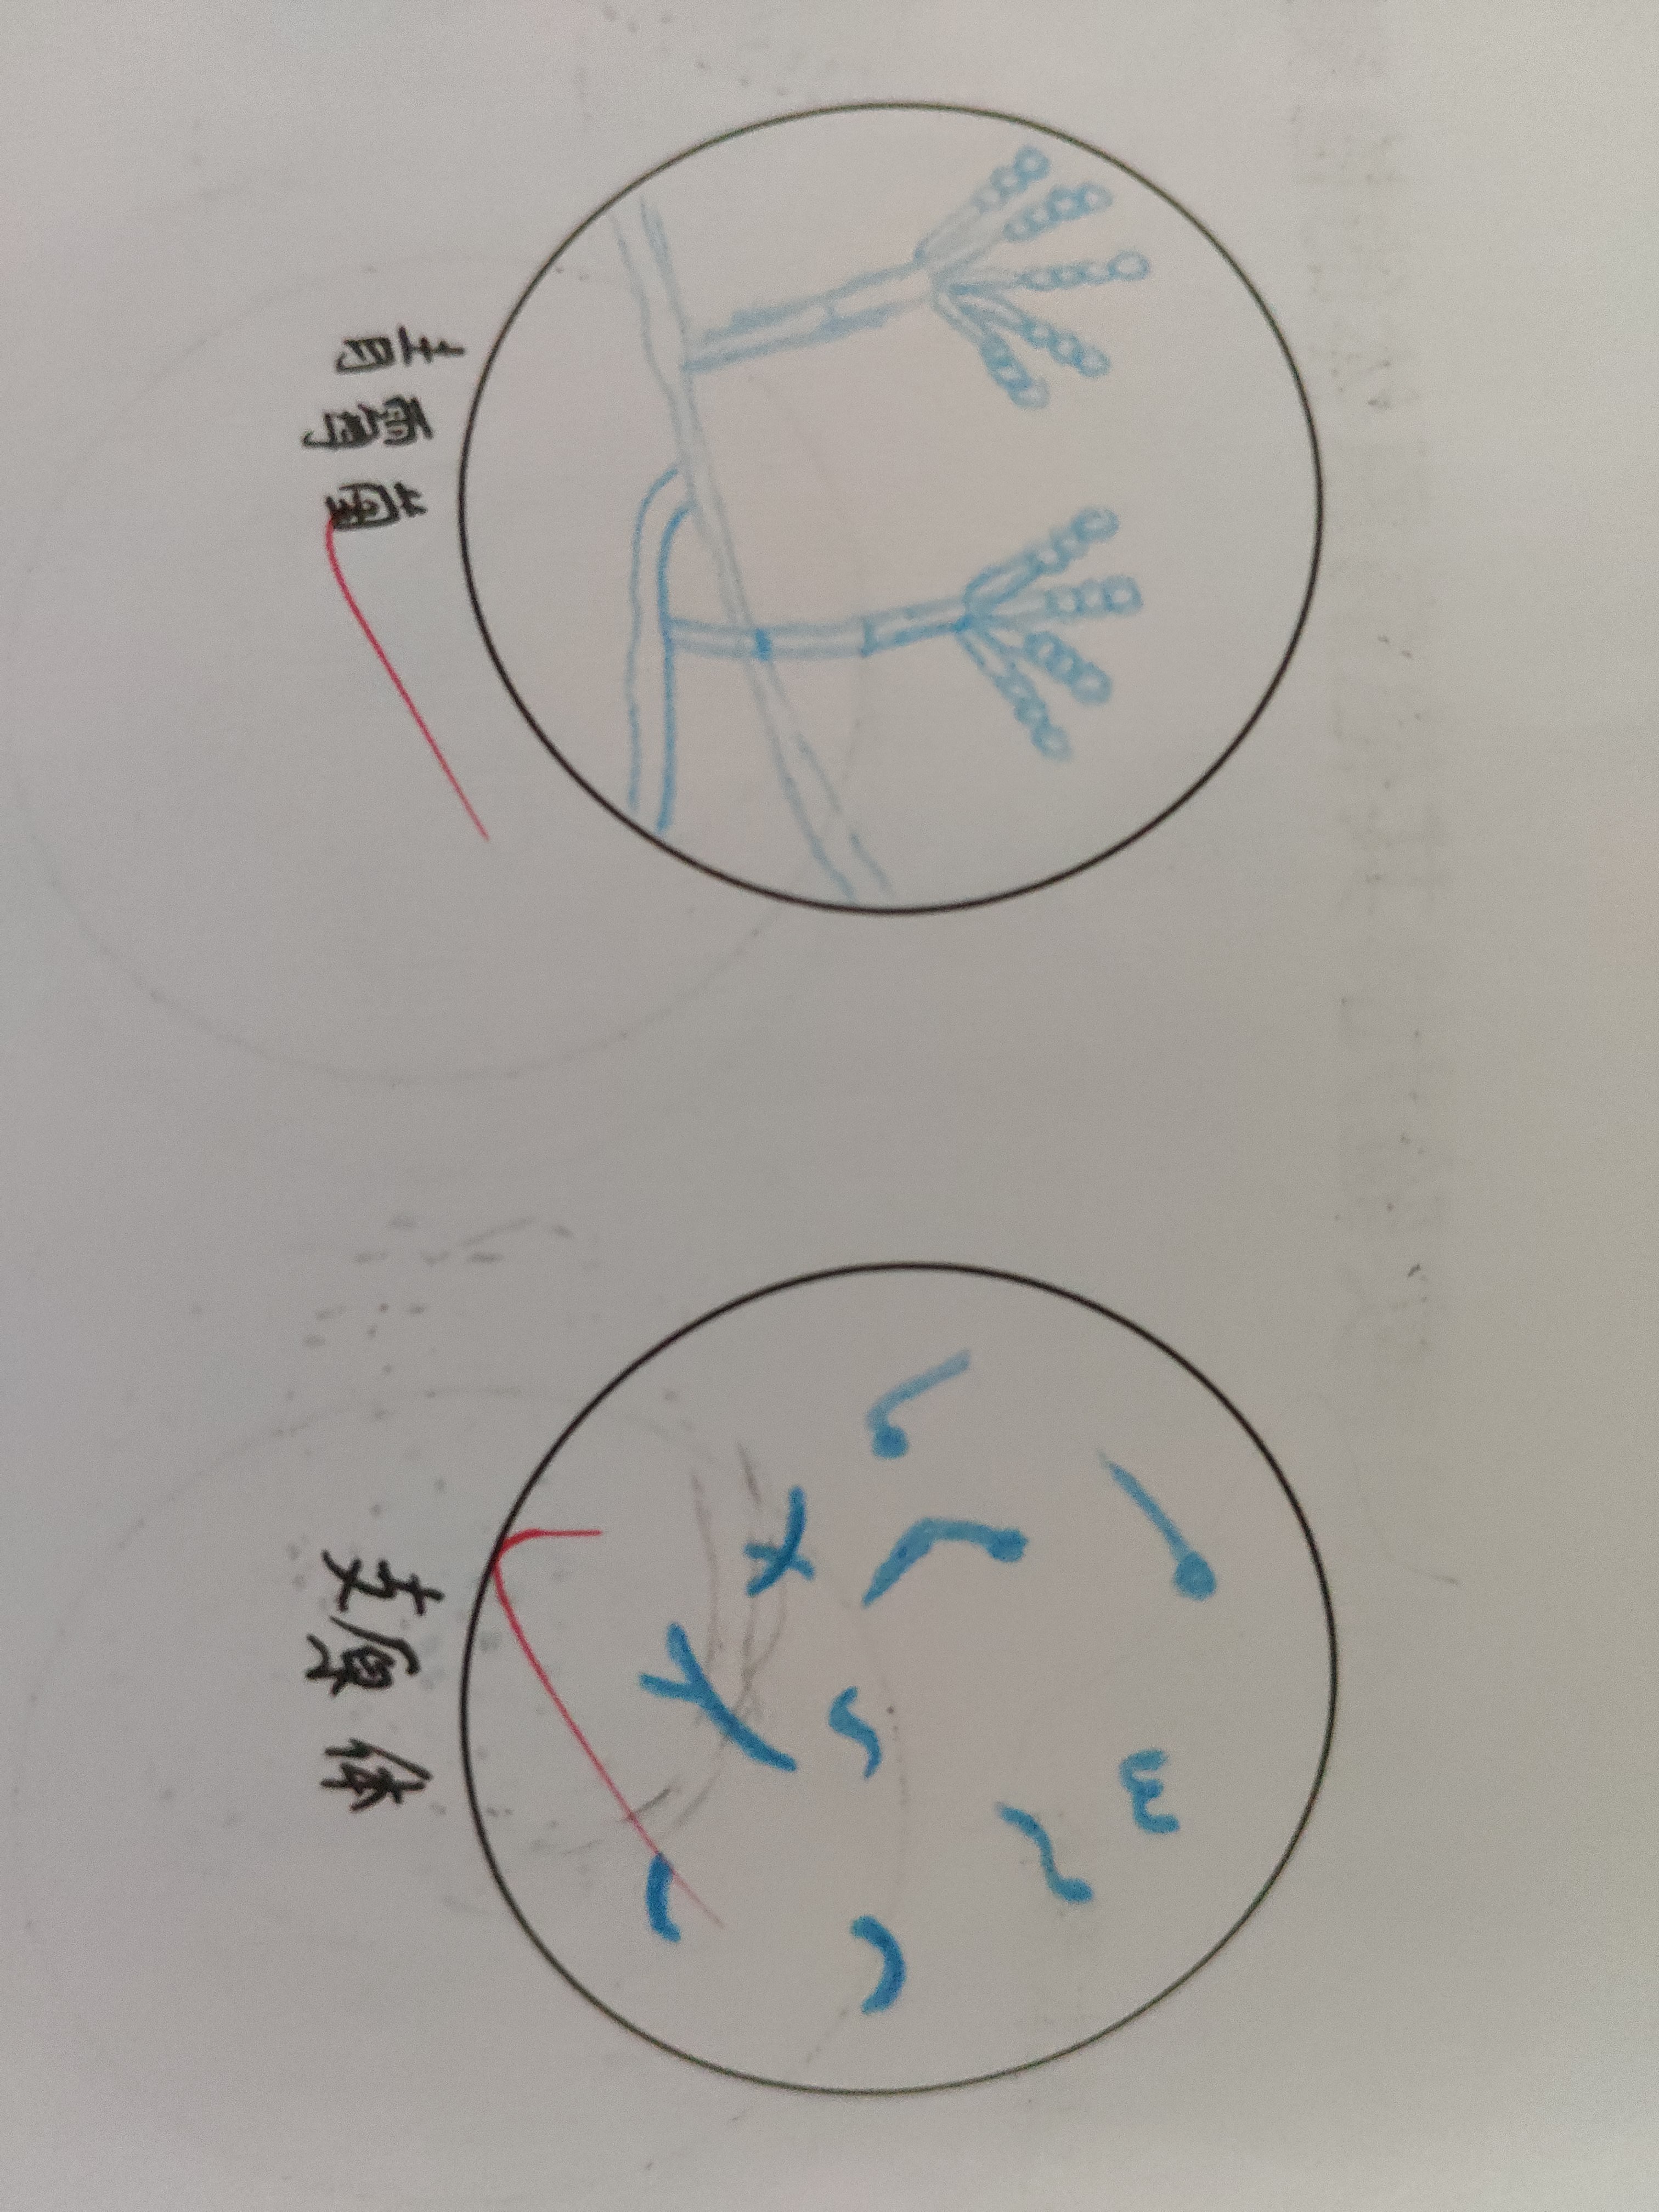 微生物红蓝铅笔手绘图